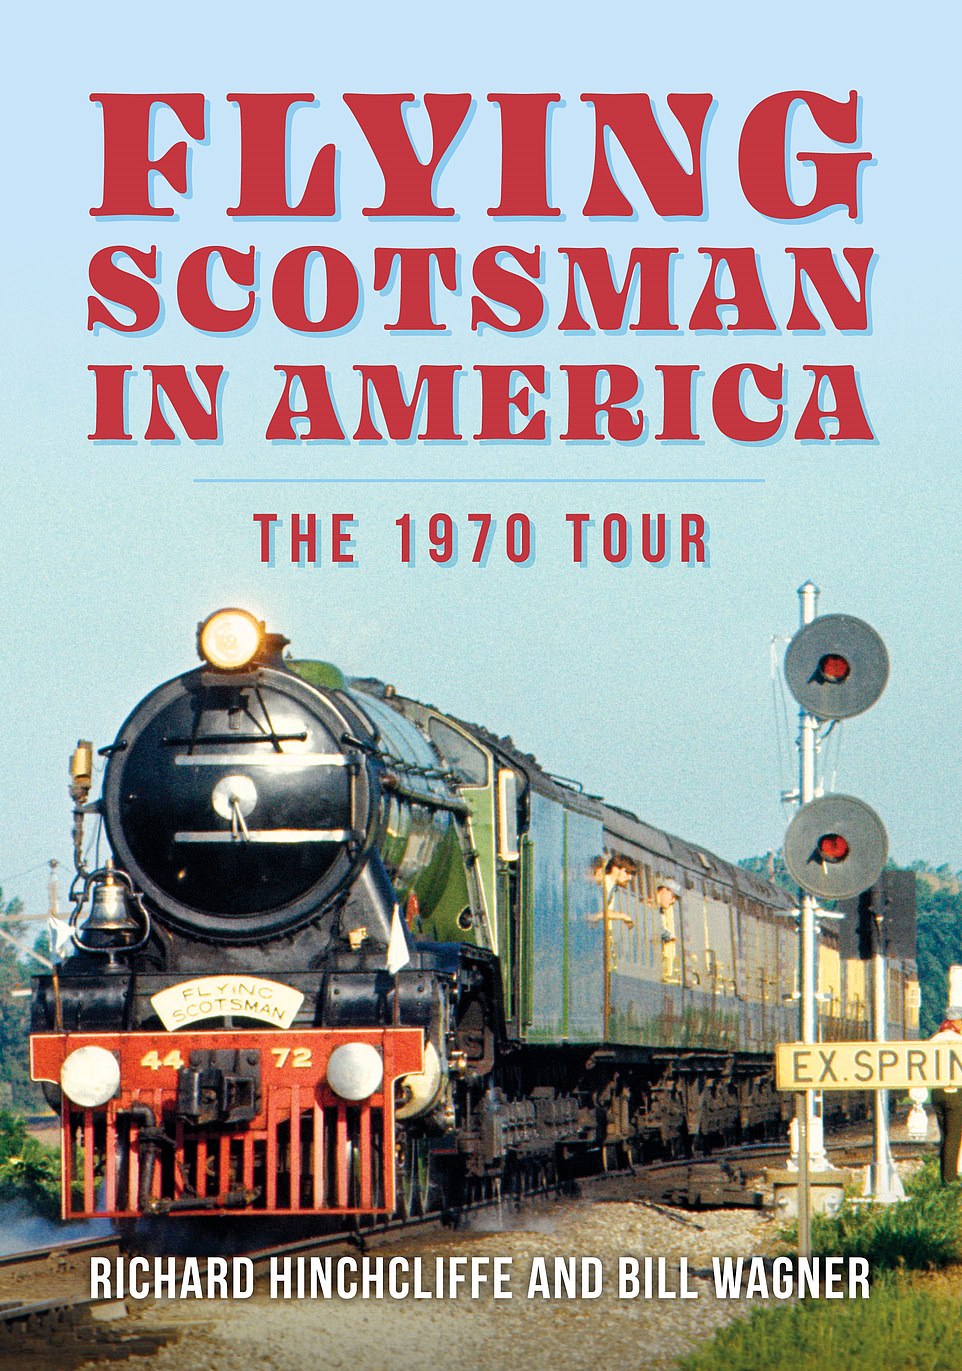 Flying Scotsman in America – The 1970 Tour von Richard Hinchcliffe und Bill Wagner ist jetzt erhältlich (£15,99, Amberley Publishing)